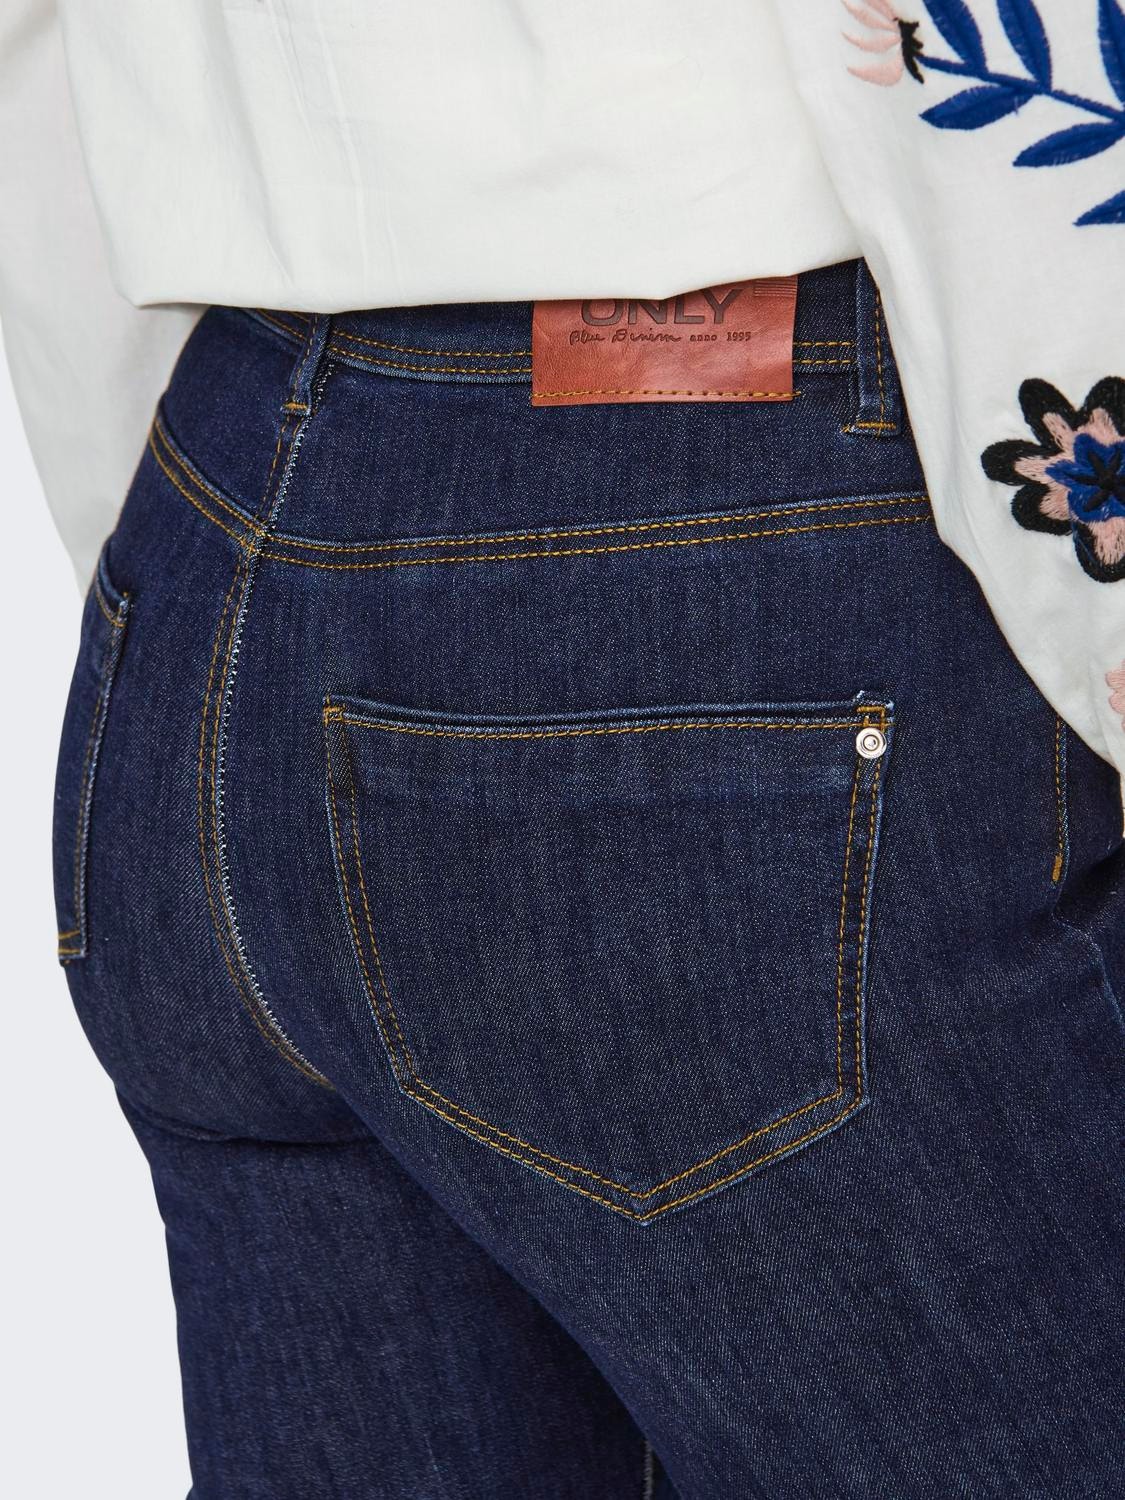 ONLY ONLWauw High Waist Flared Jeans -Dark Blue Denim - 15230472